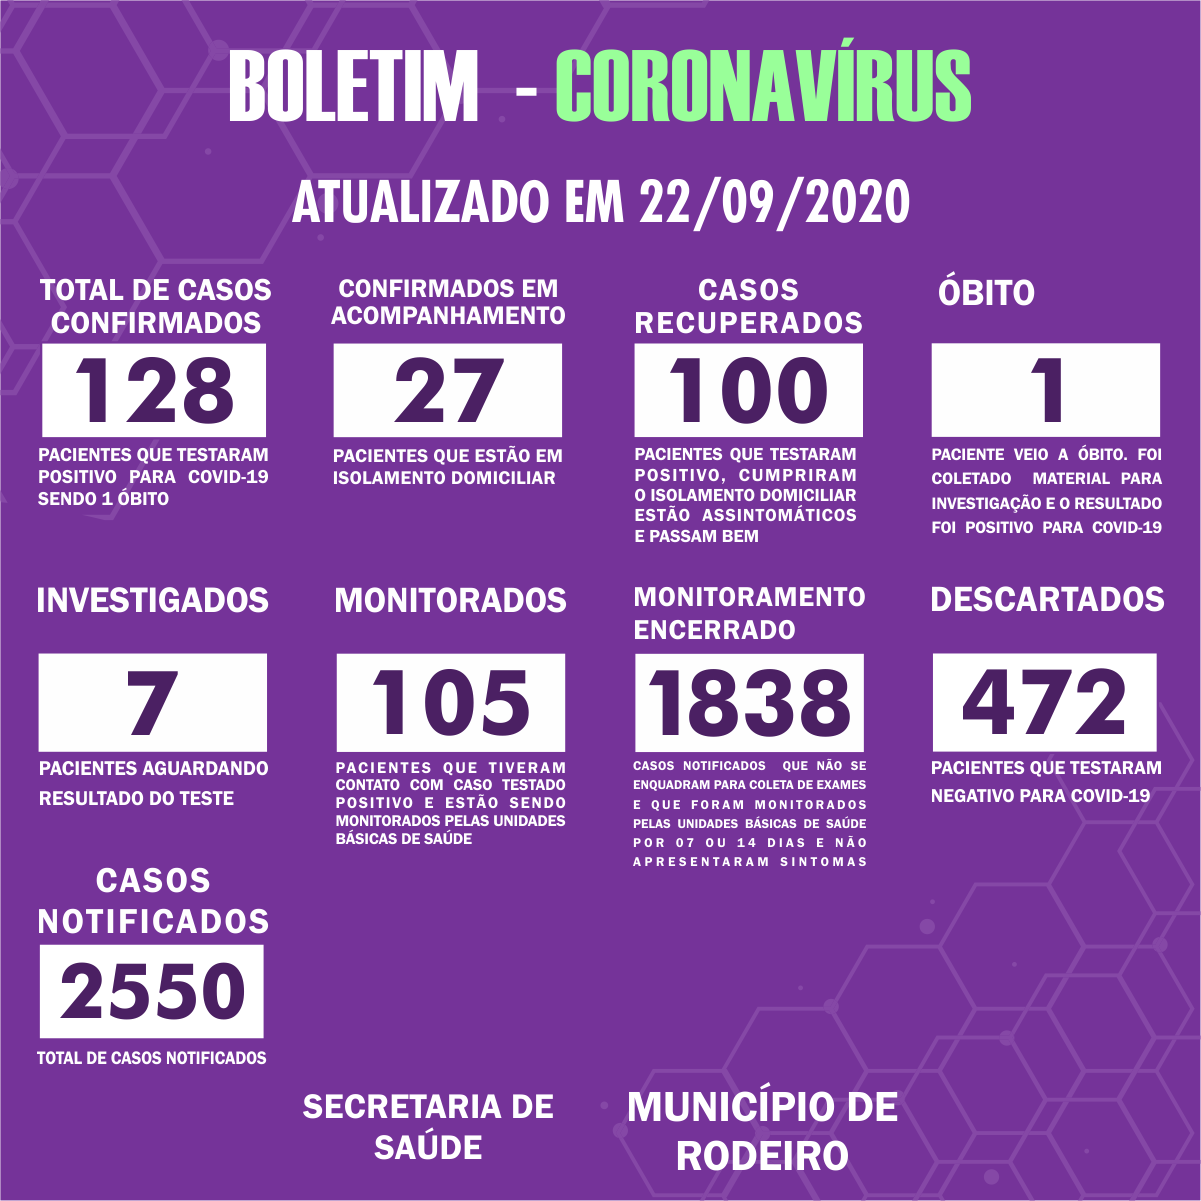 Boletim Epidemiológico do Município de Rodeiro sobre coronavírus, atualizado em 22/09/2020